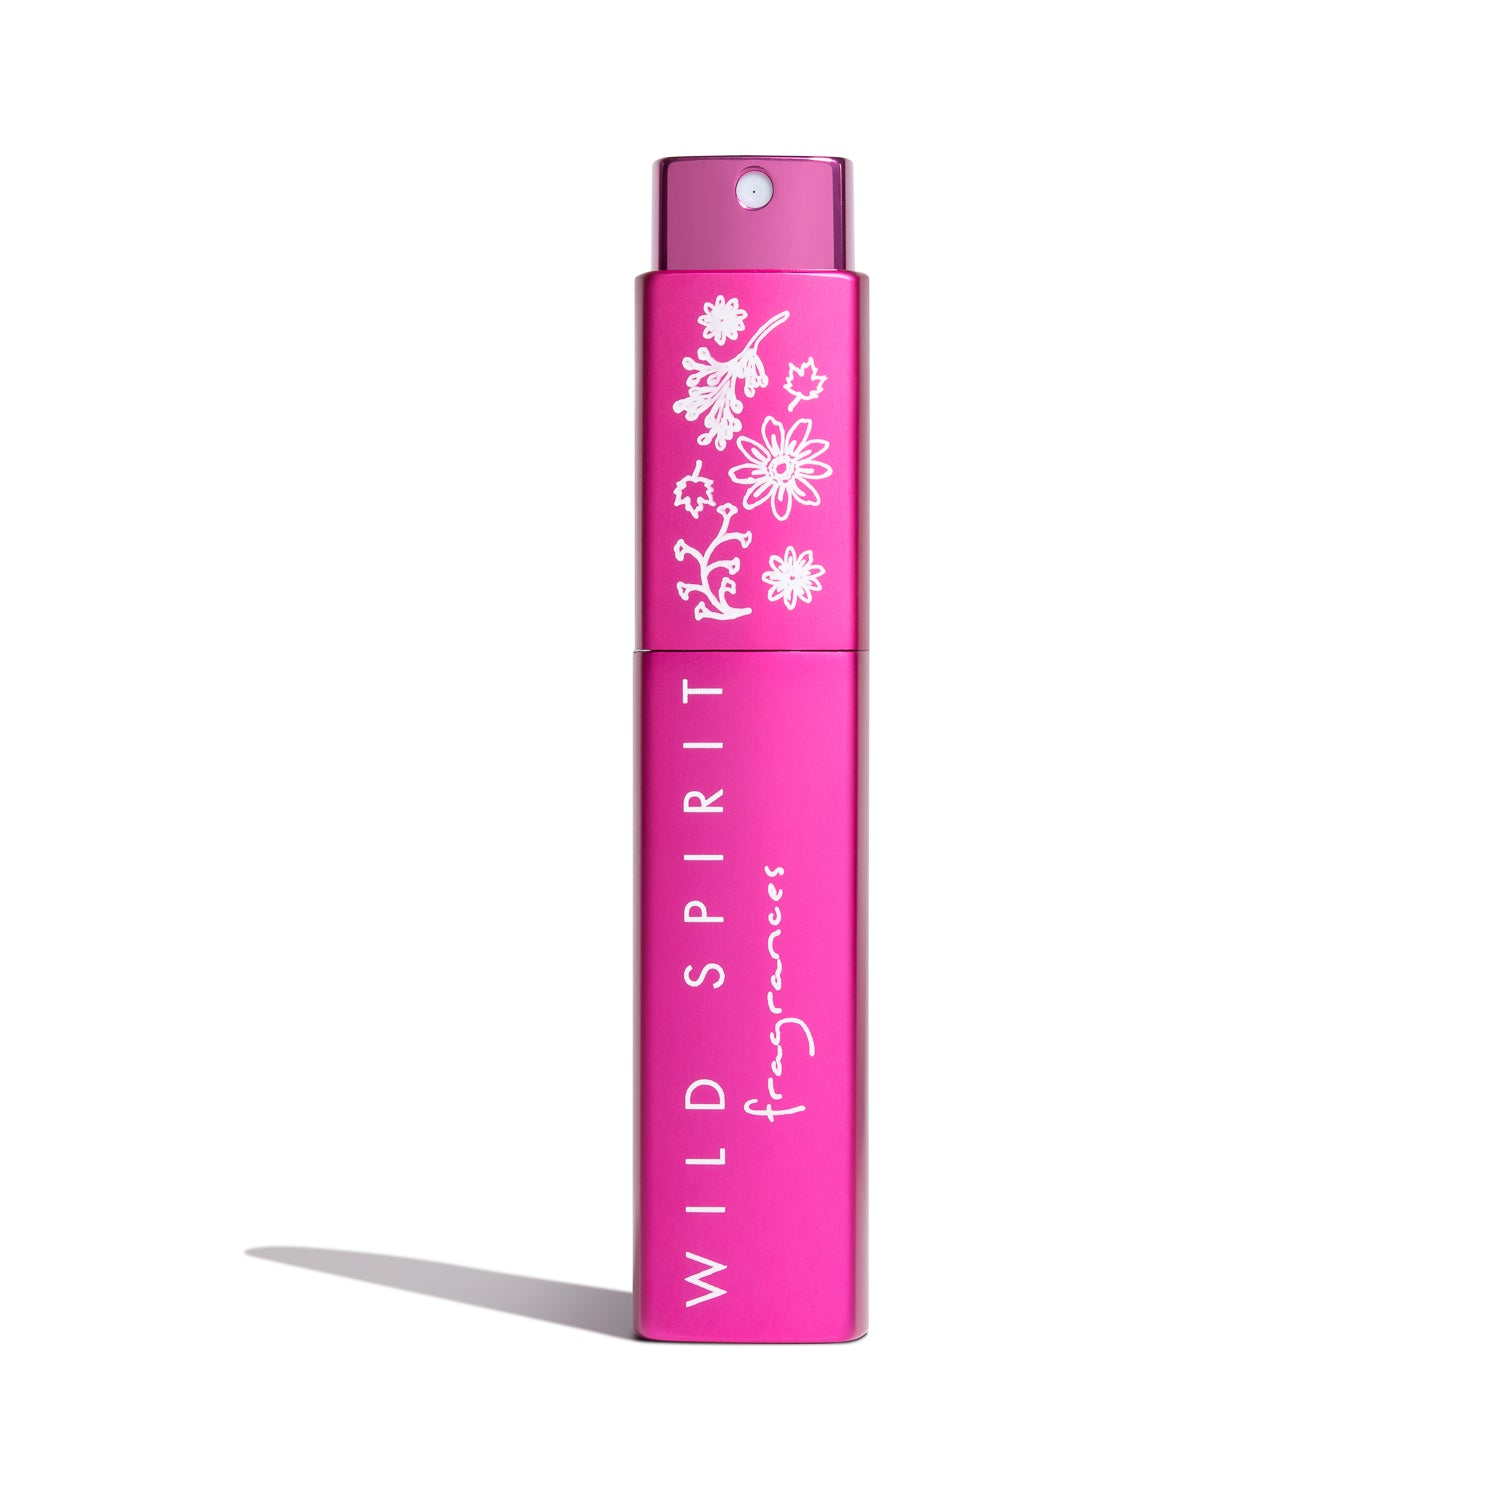 Rosy Glow Perfume Atomizer - Wild Spirit